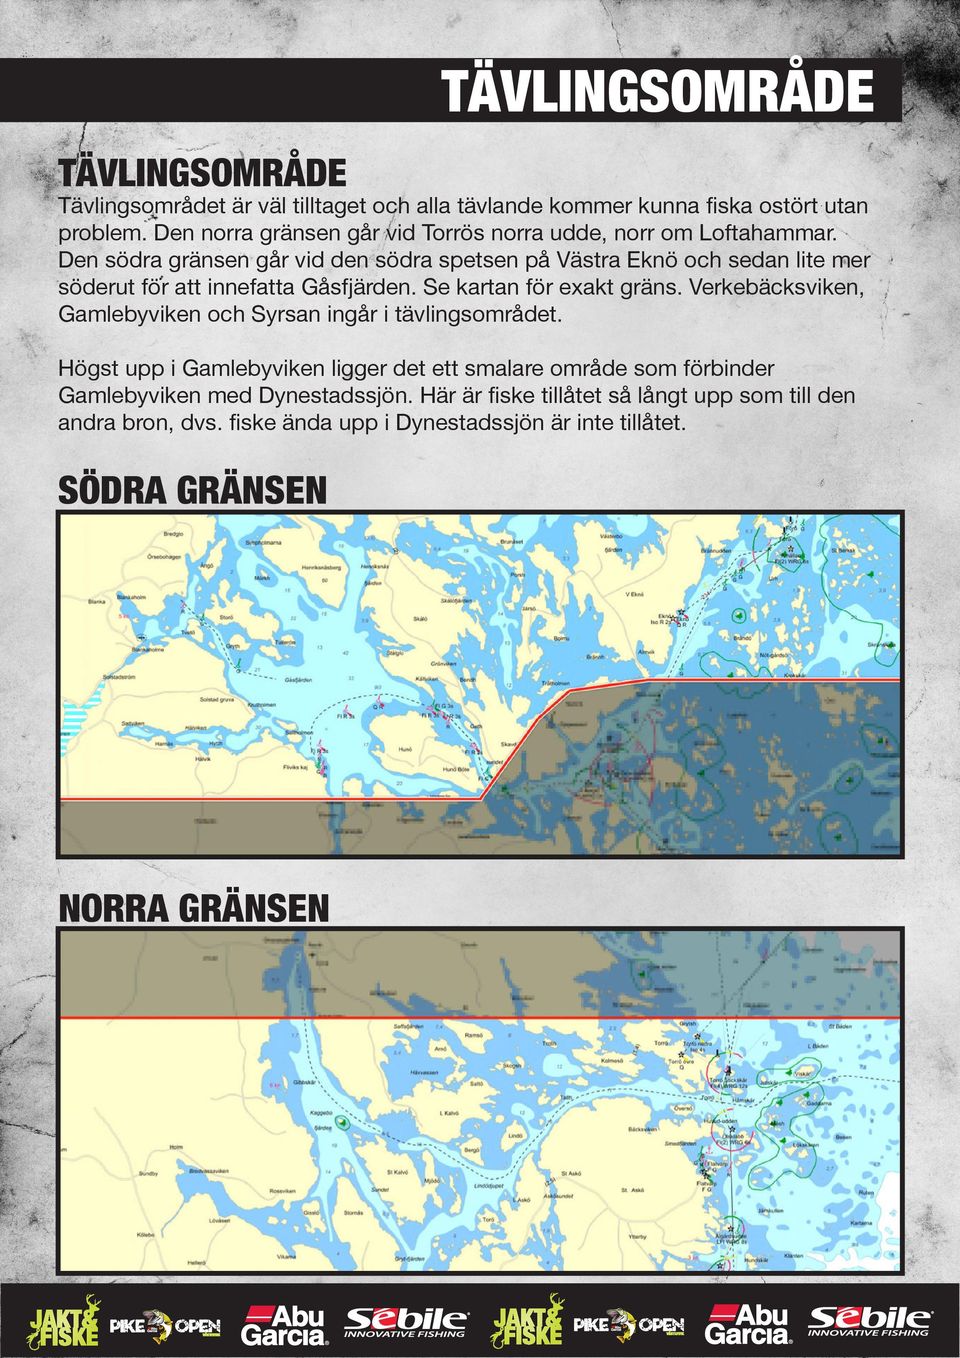 Den södra gränsen går vid den södra spetsen på Västra Eknö och sedan lite mer söderut för att innefatta Gåsfjärden. Se kartan för exakt gräns.